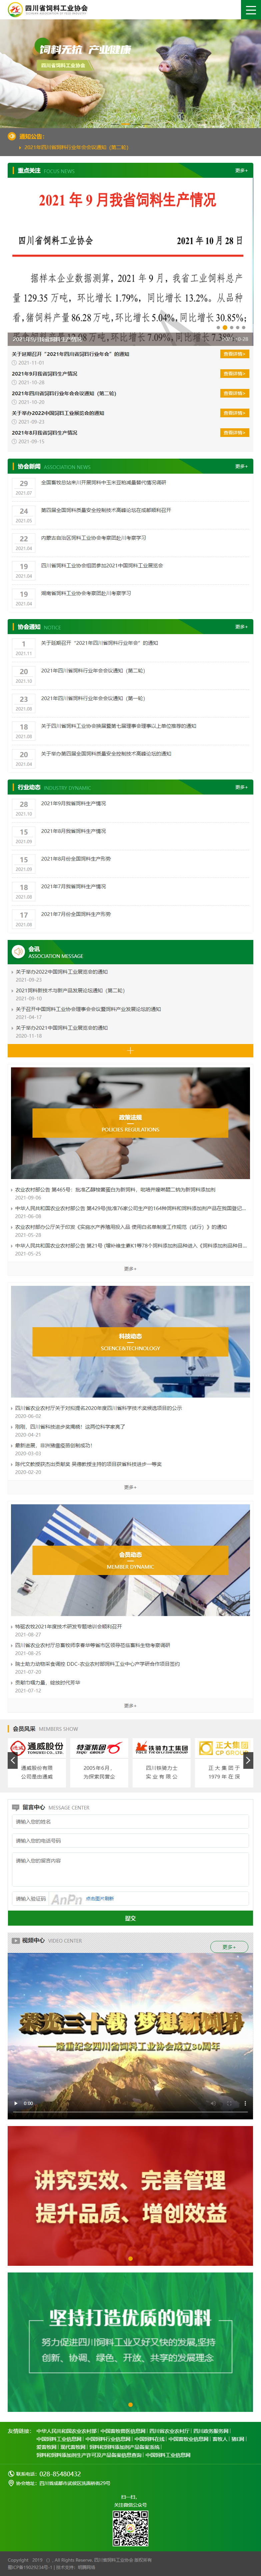 四川省饲料工业协会网站案例